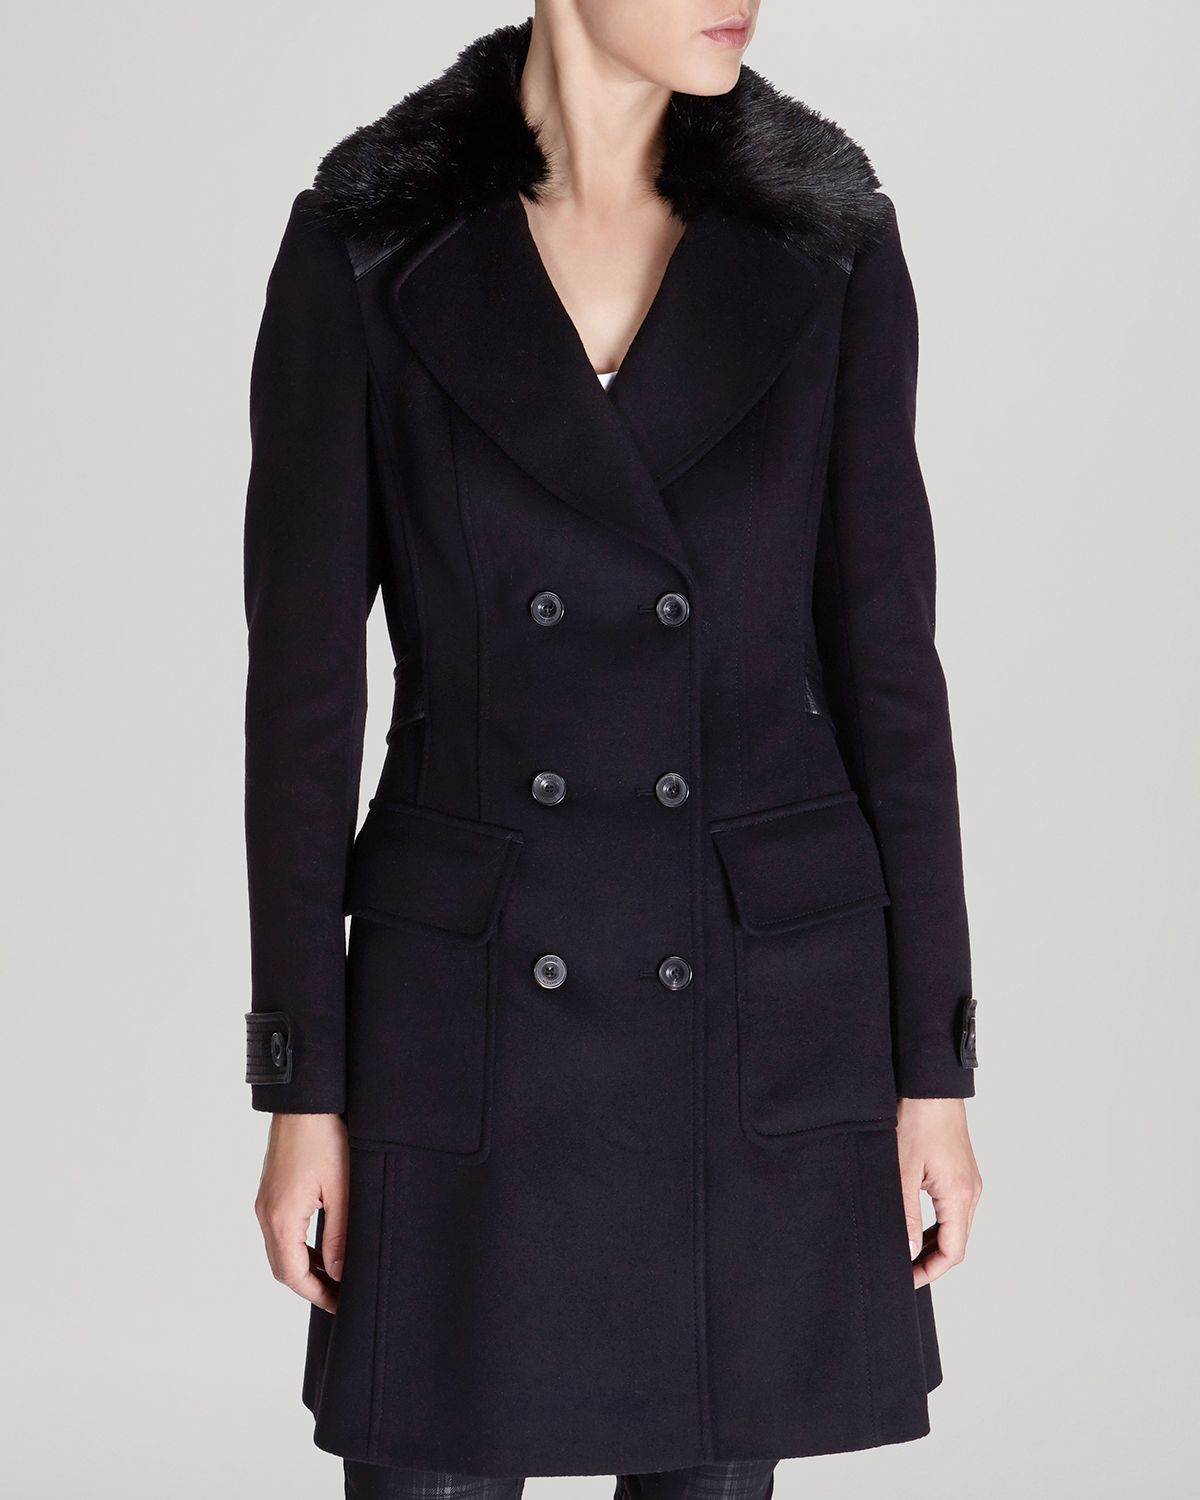 Karen millen Coat - Classic Investment Collection in Black | Lyst